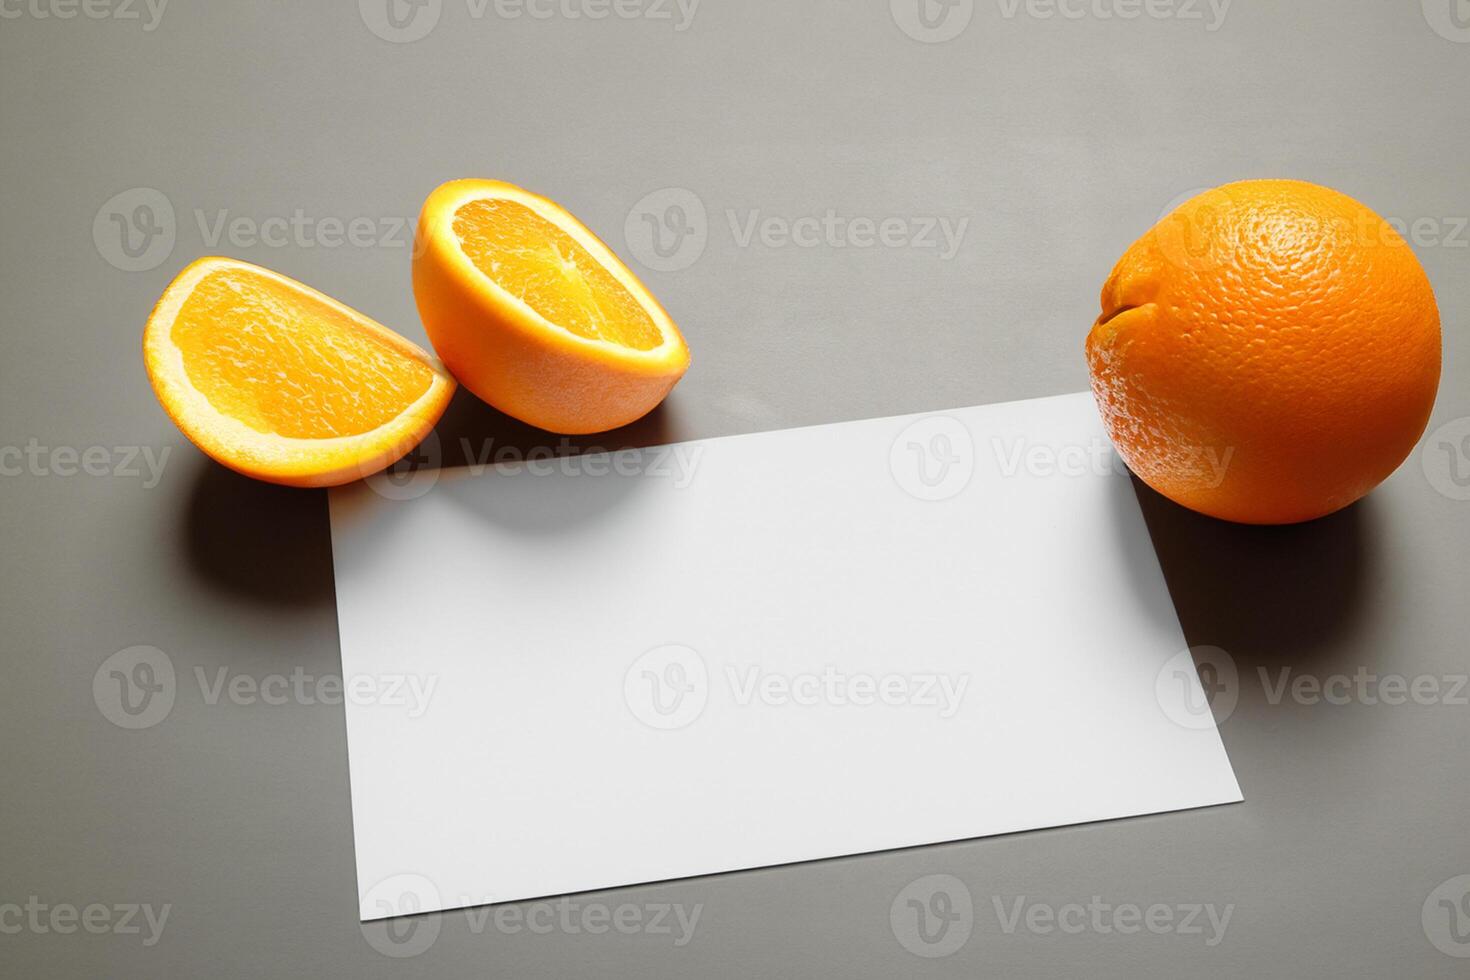 Weiß Papier Attrappe, Lehrmodell, Simulation belebt durch das pikant Aura von frisch Orangen, basteln ein visuell Symphonie von kulinarisch Opulenz und gesund Design foto